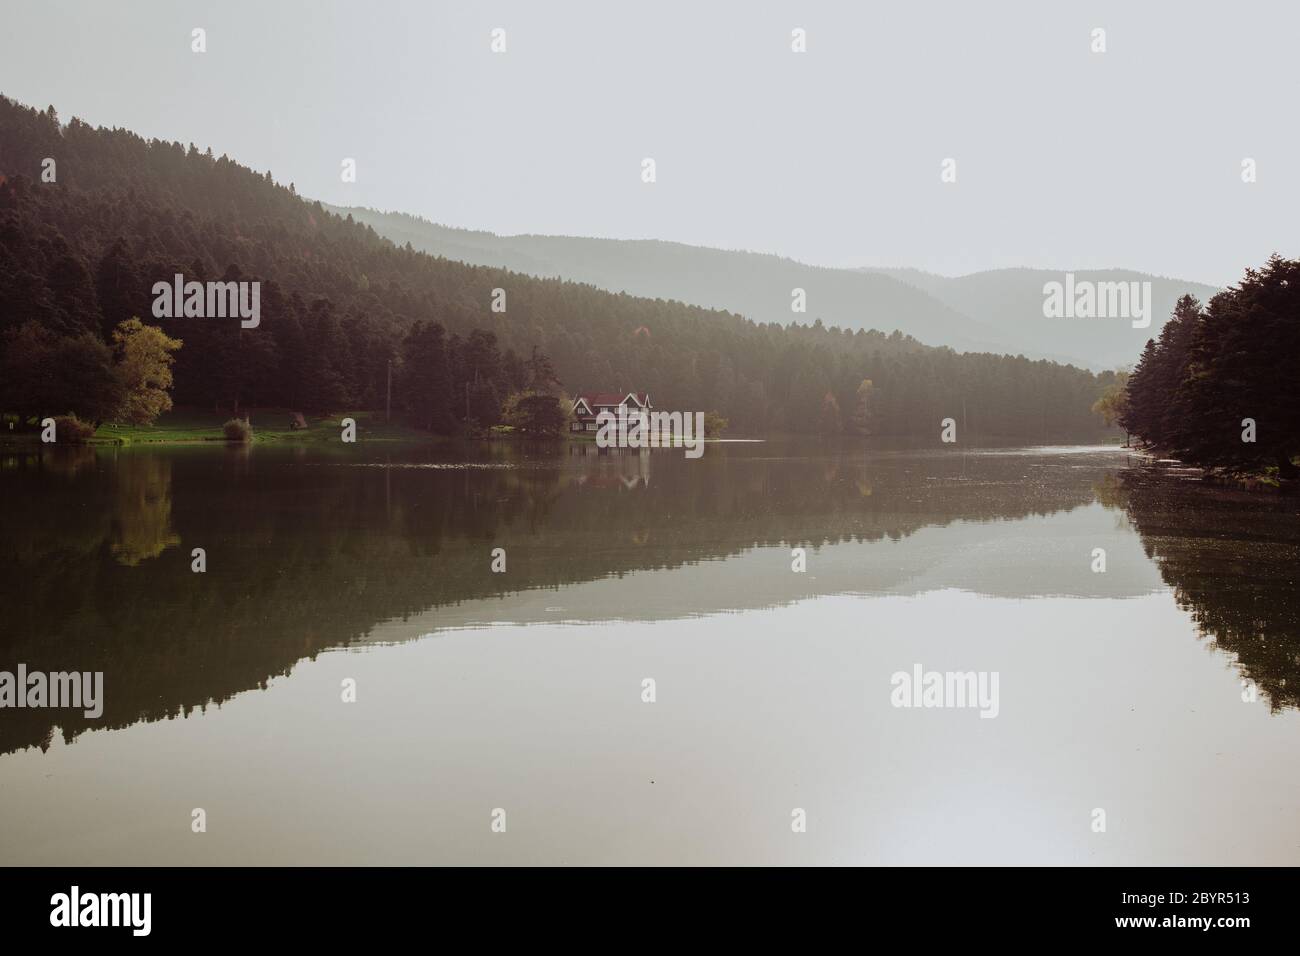 Hermoso paisaje en otoño con montañas y árboles que se reflejan en un lago tranquilo como un espejo, reflejo en el lago Abant TURQUÍA Foto de stock